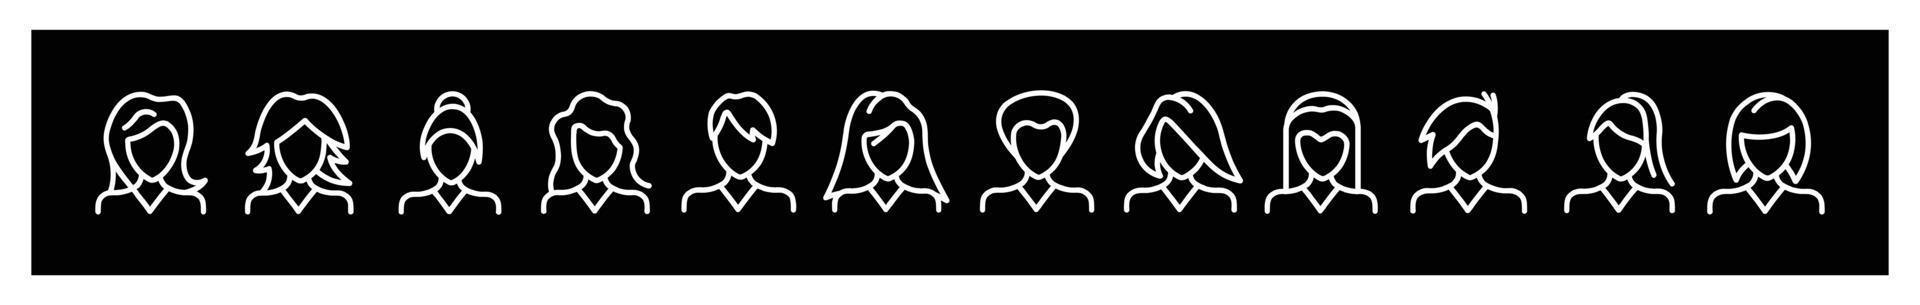 Menschen Avatar Icon Set Frauen Frisur, Vektor flaches Symbol als weibliches Illustrationsdesign, Symbole für Design auf schwarzem Hintergrund